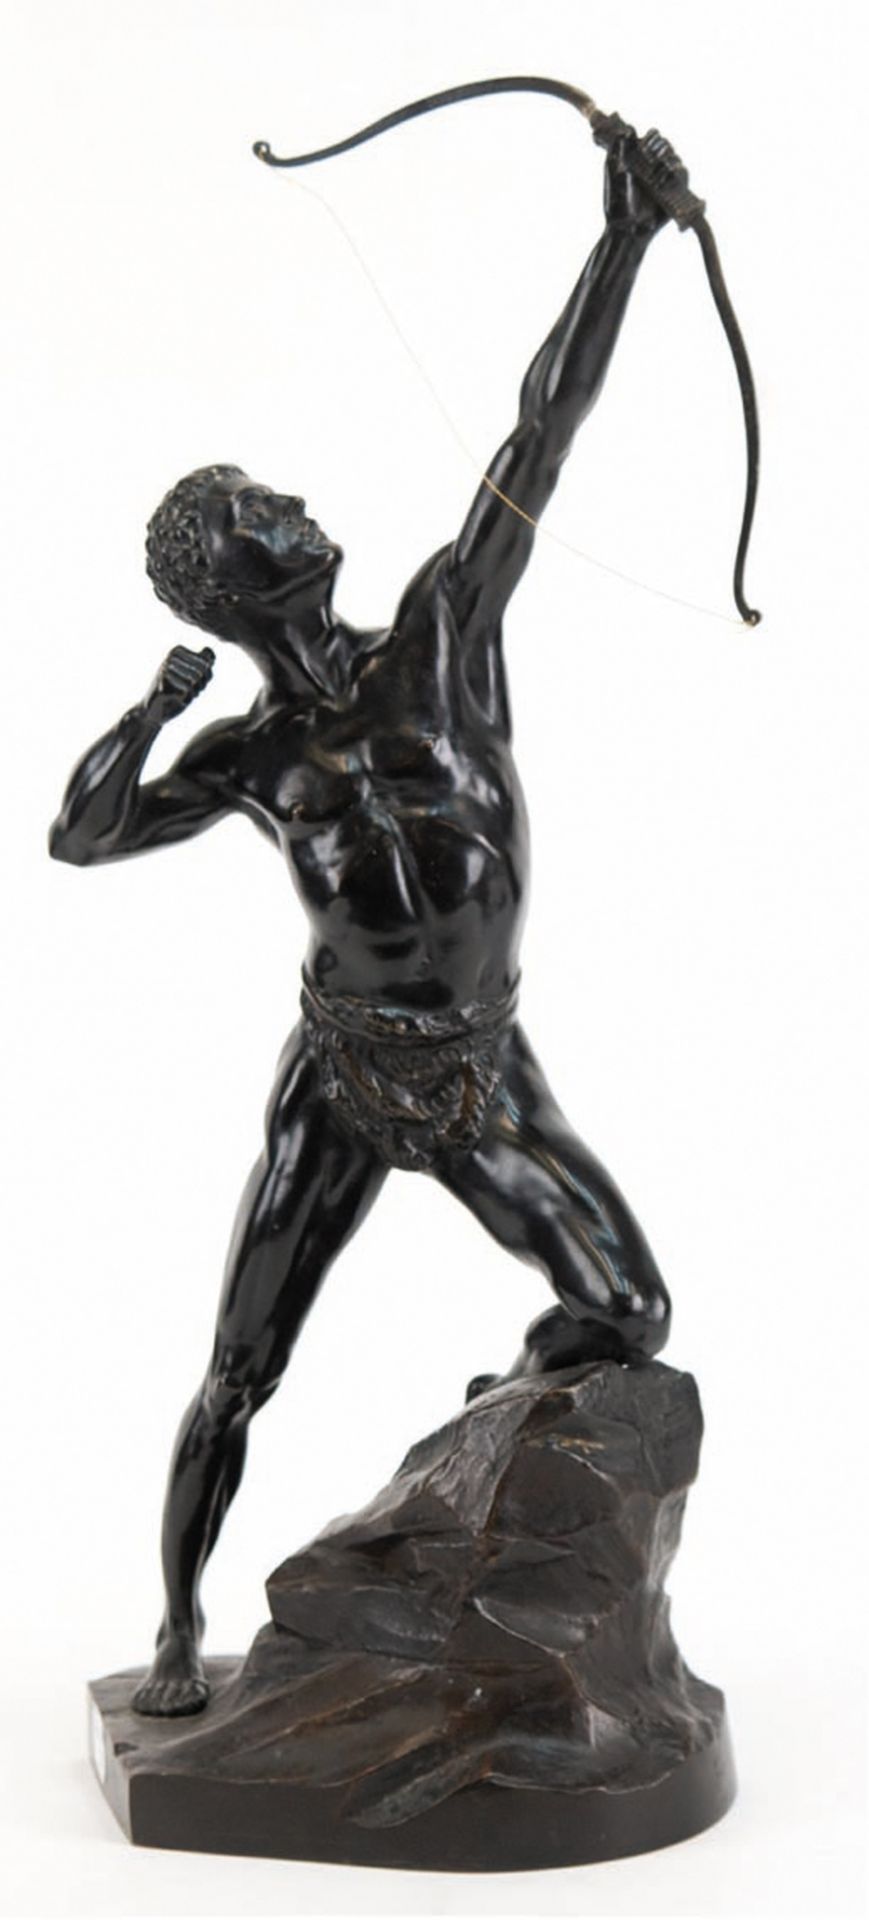 Schmidt Wendlin, Nikolaus (1883-1954) "Bogenschütze auf einem Felsen kniend", Bronzefigur, dunkelbr